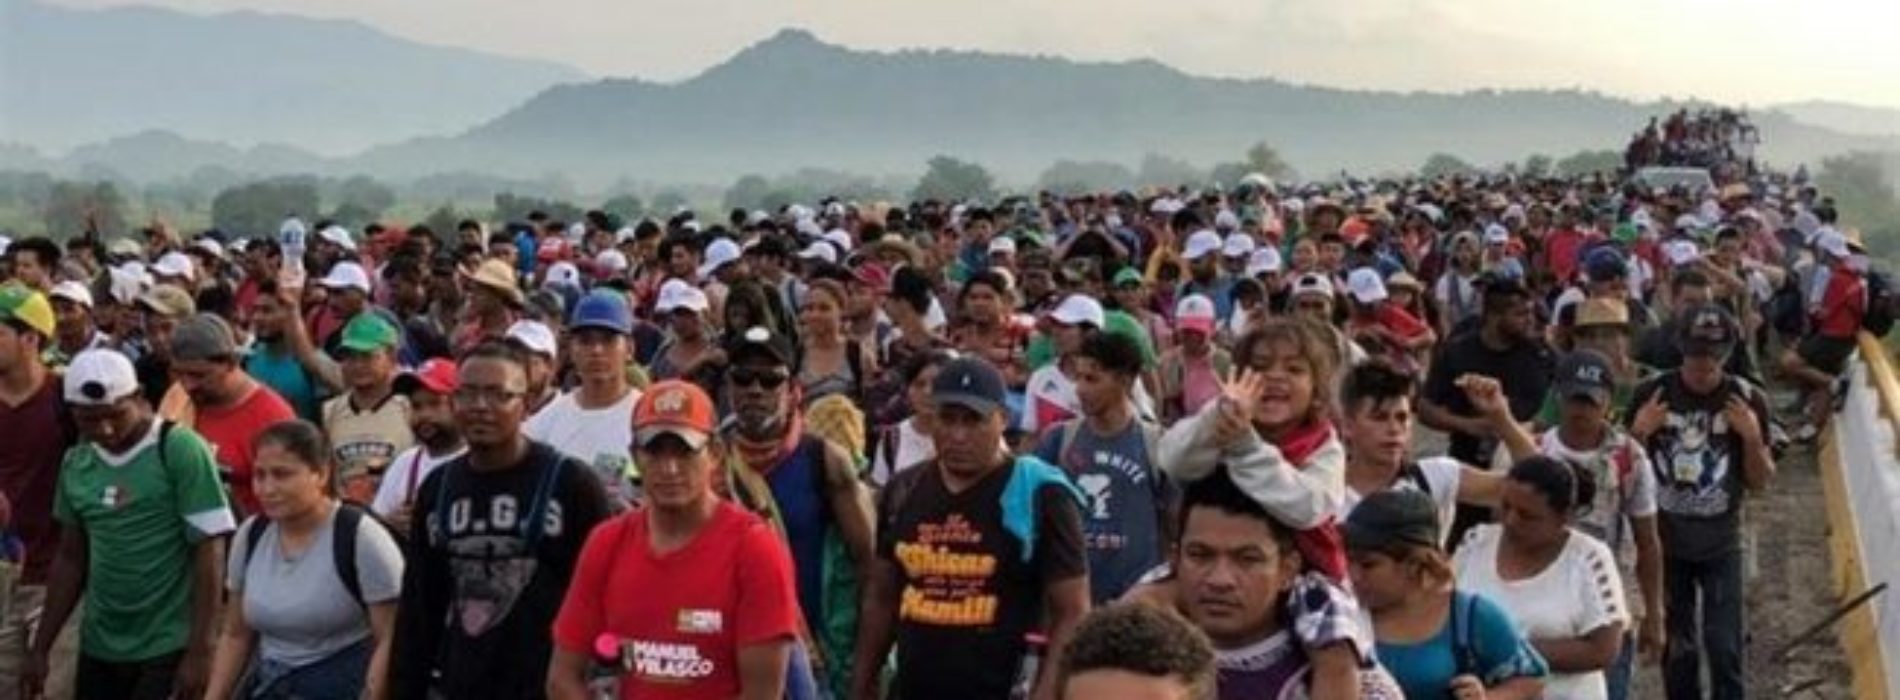 Exige ombudsman de Oaxaca reconocer crisis humanitaria por
caravana de migrantes